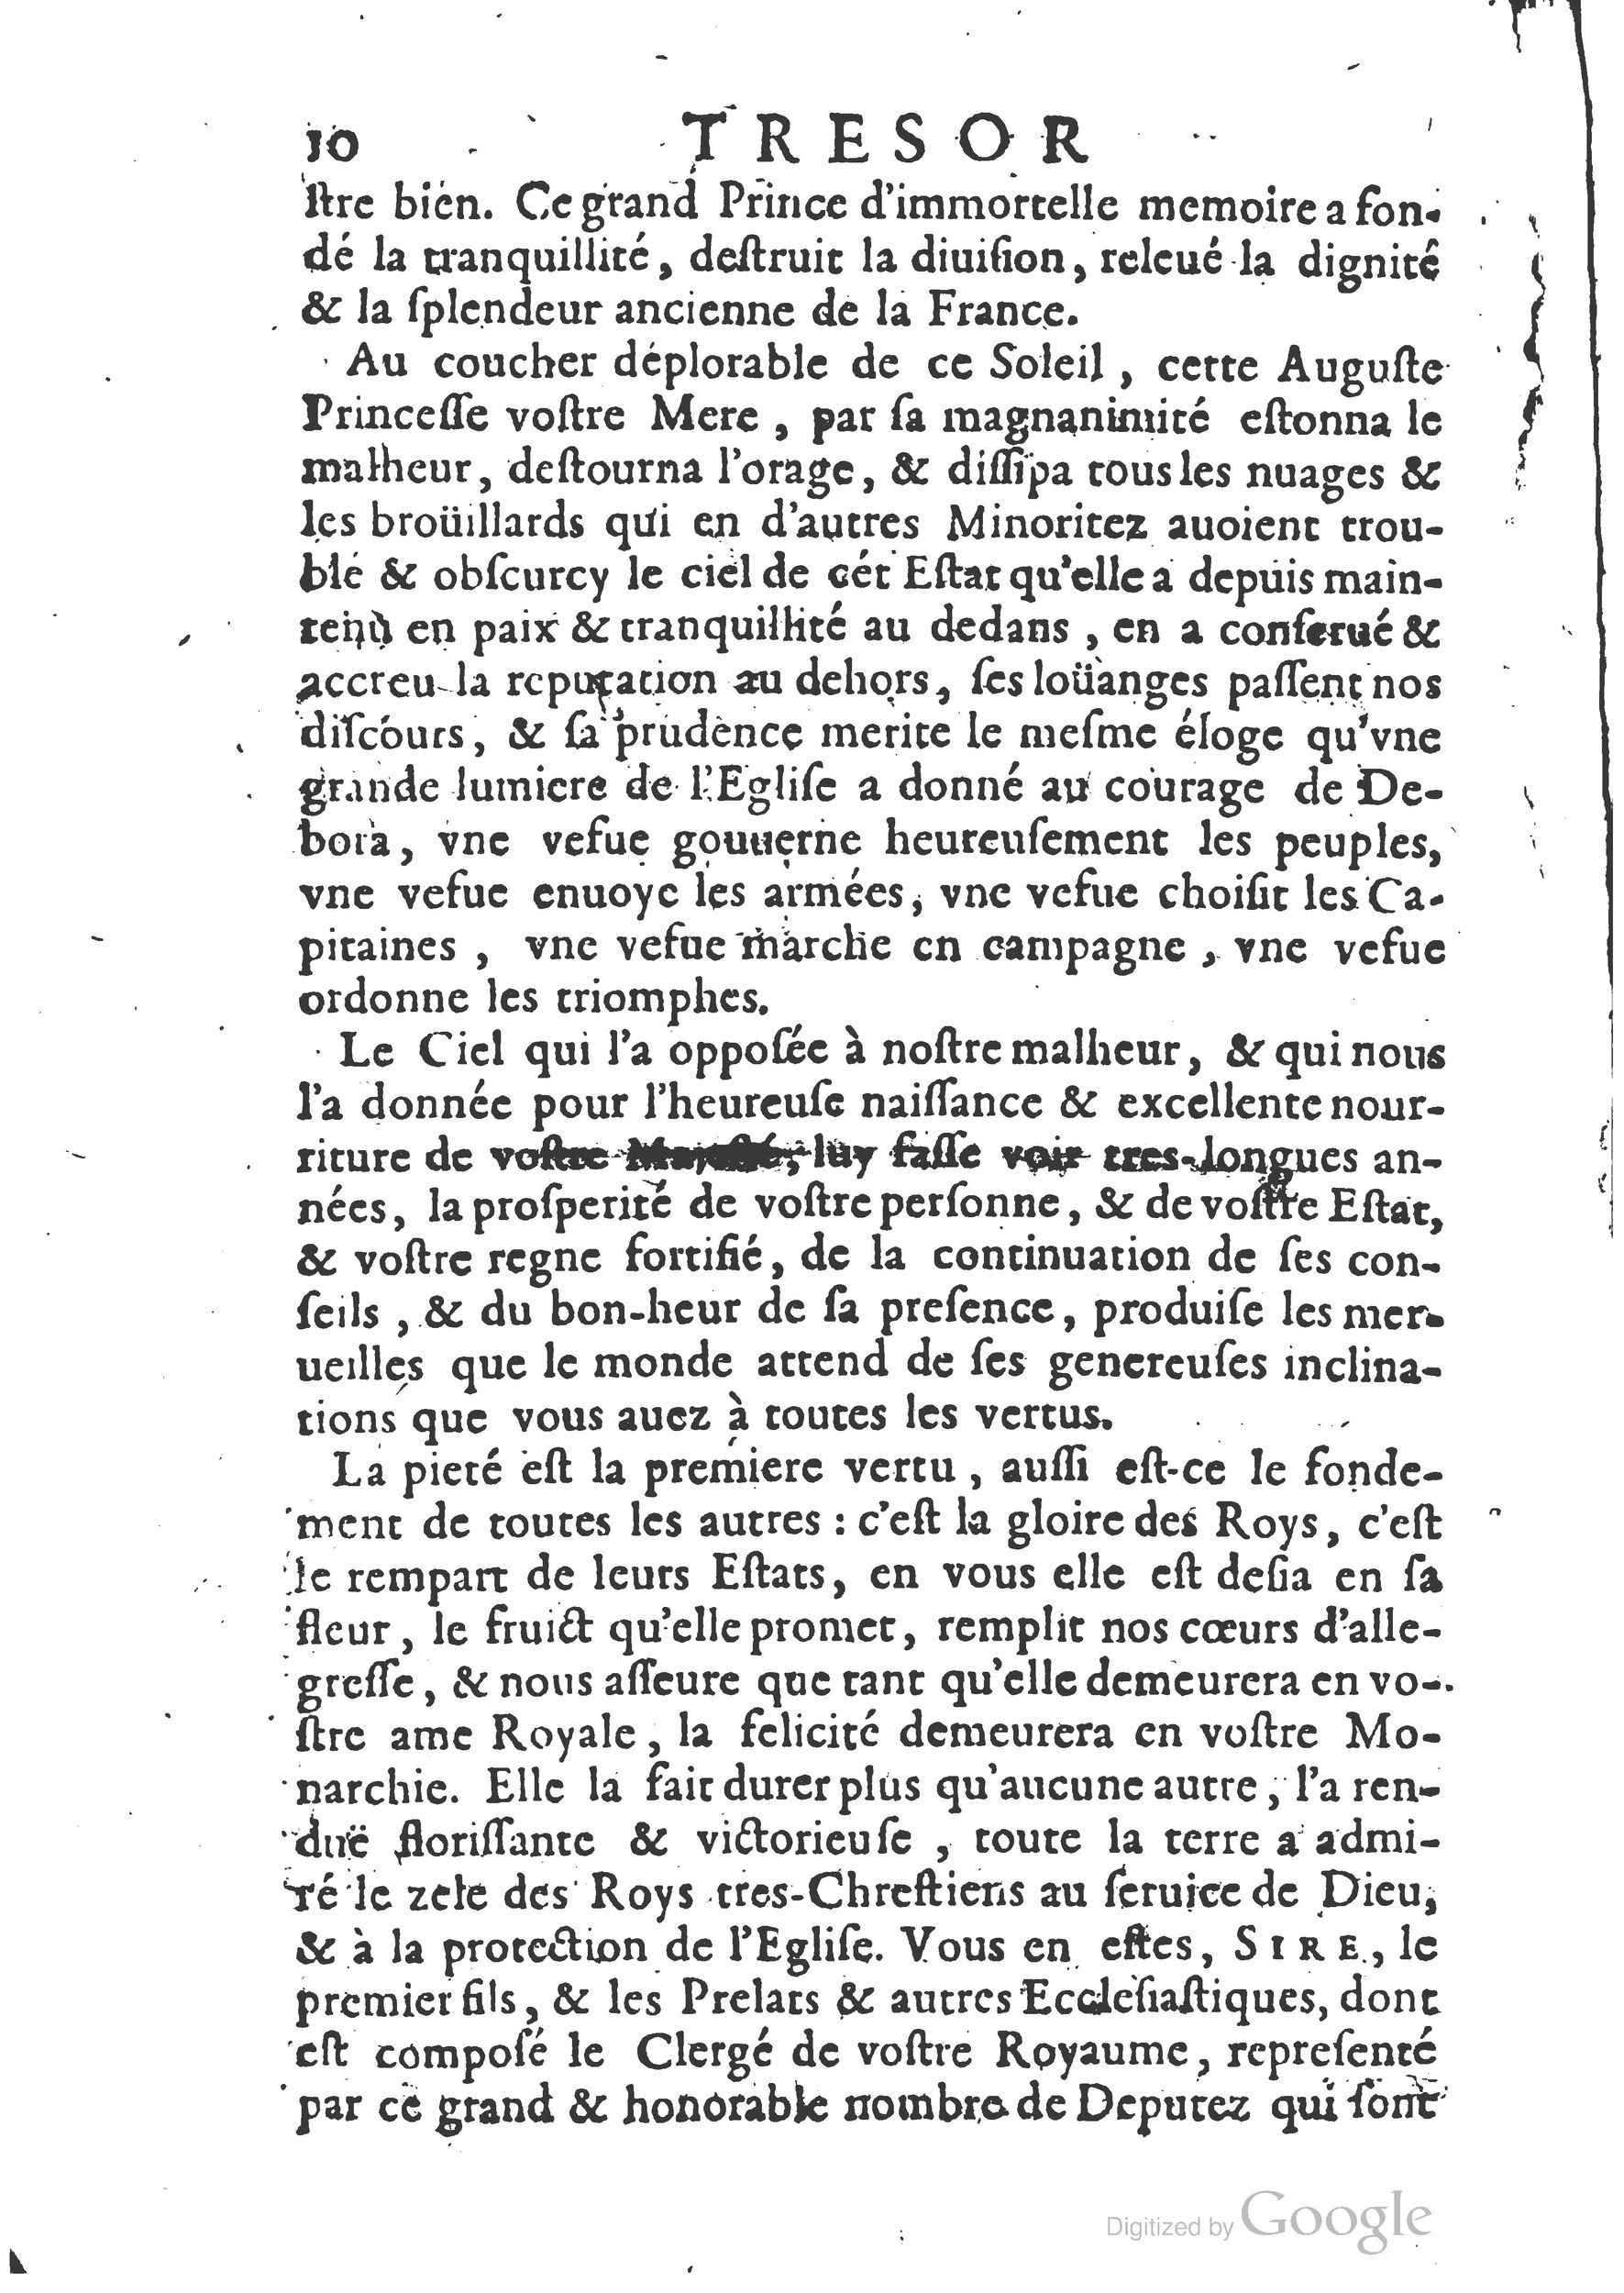 1654 Trésor des harangues, remontrances et oraisons funèbres Robin_BM Lyon_Page_029.jpg